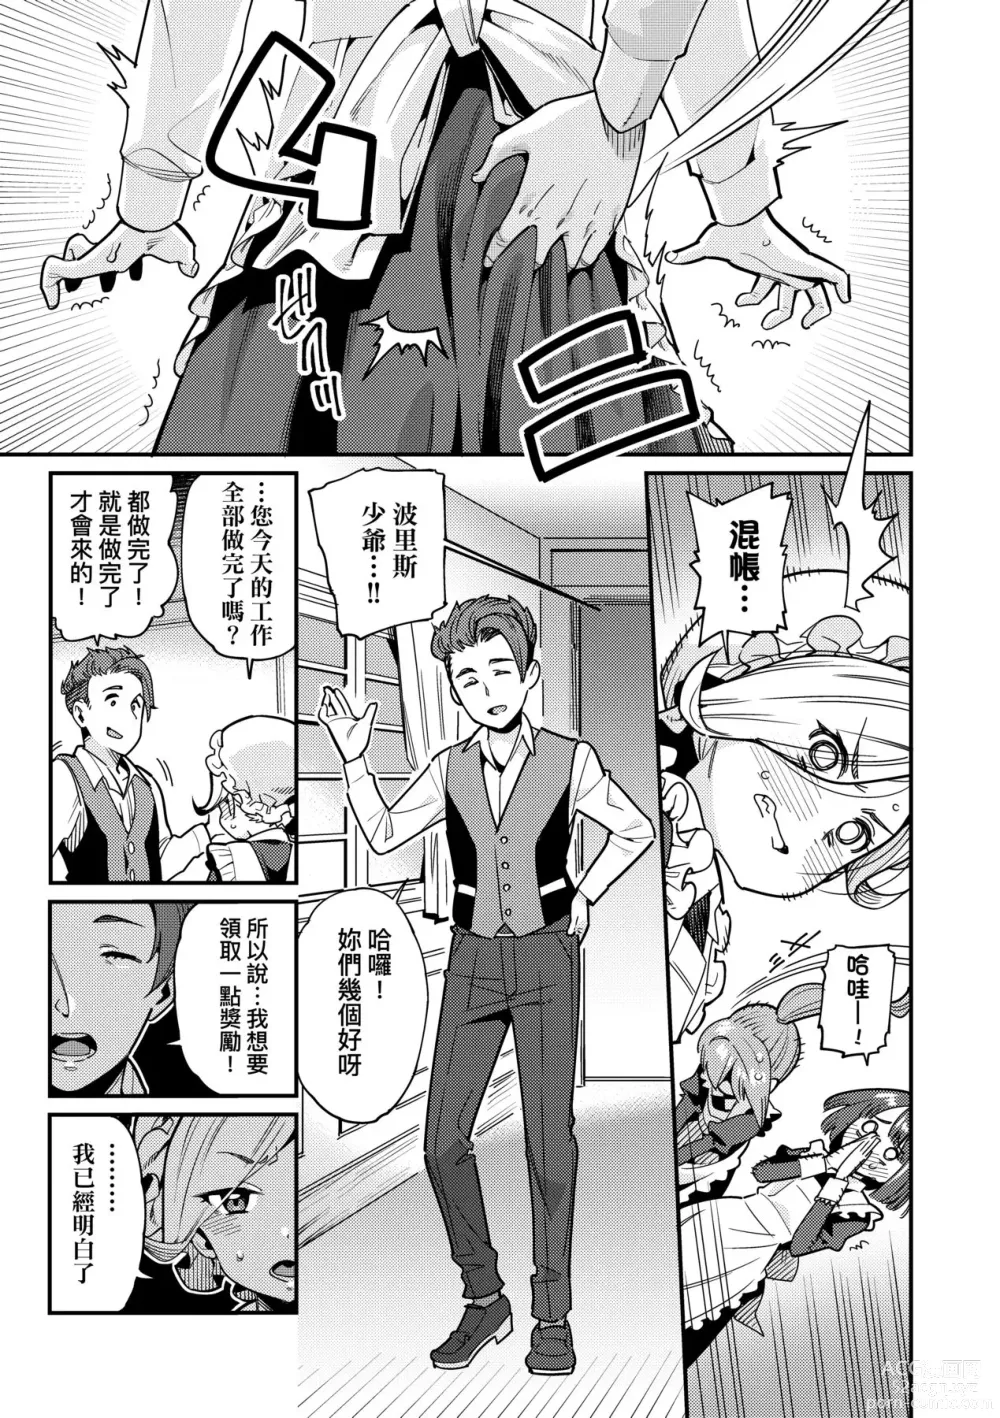 Page 8 of manga Itoshiki Wagaya (decensored)